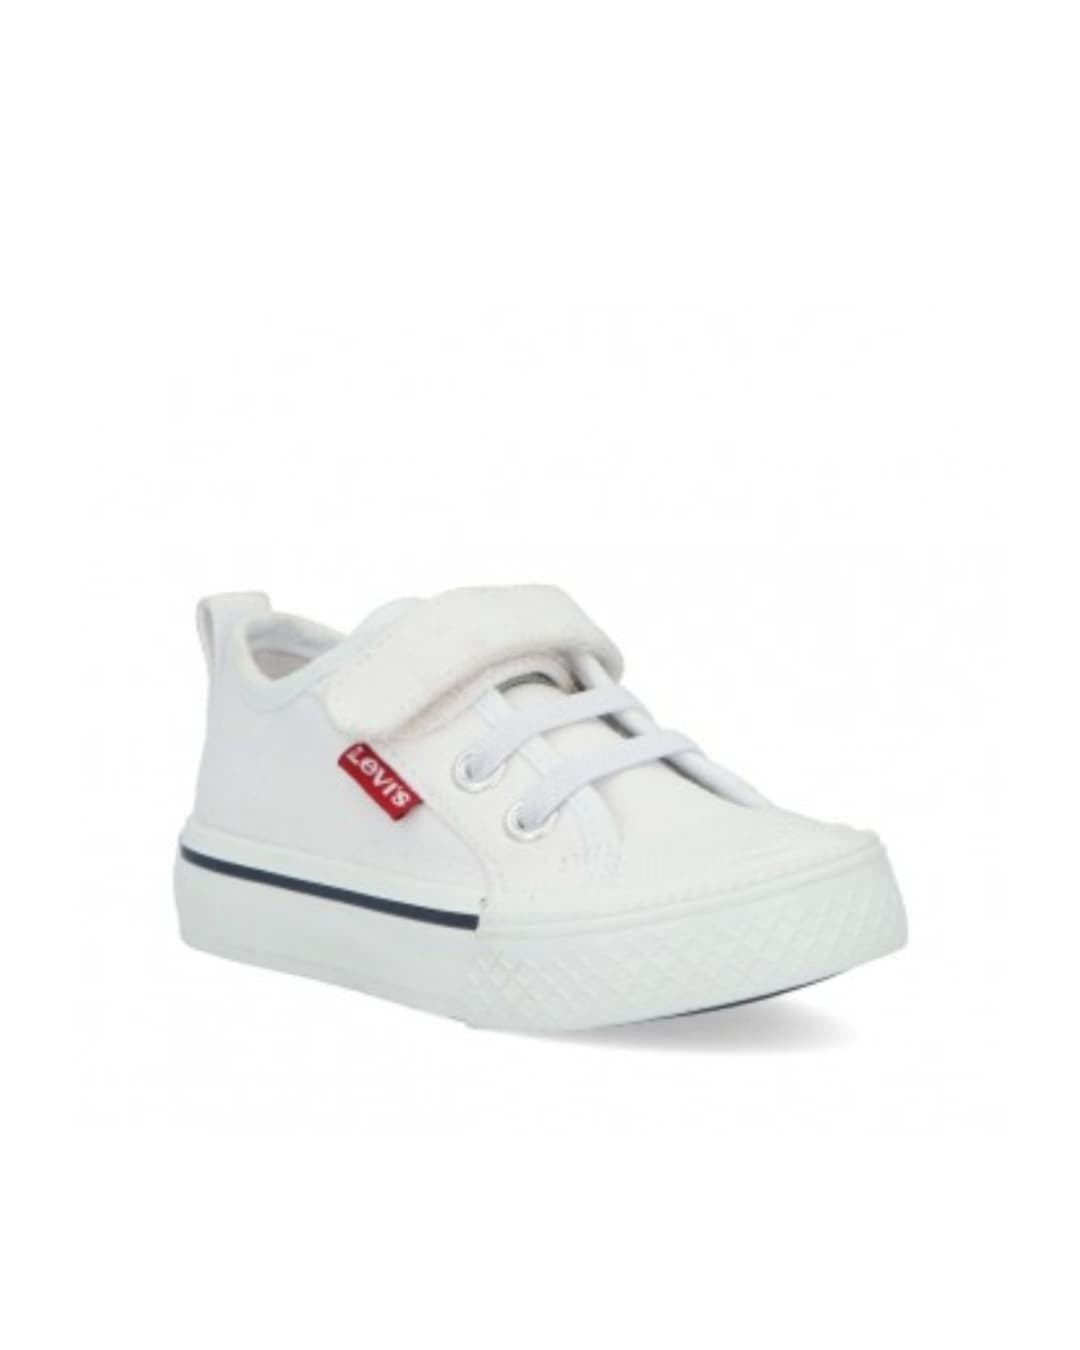 comprar zapatillas niños lona blanco / nicolatienda.com